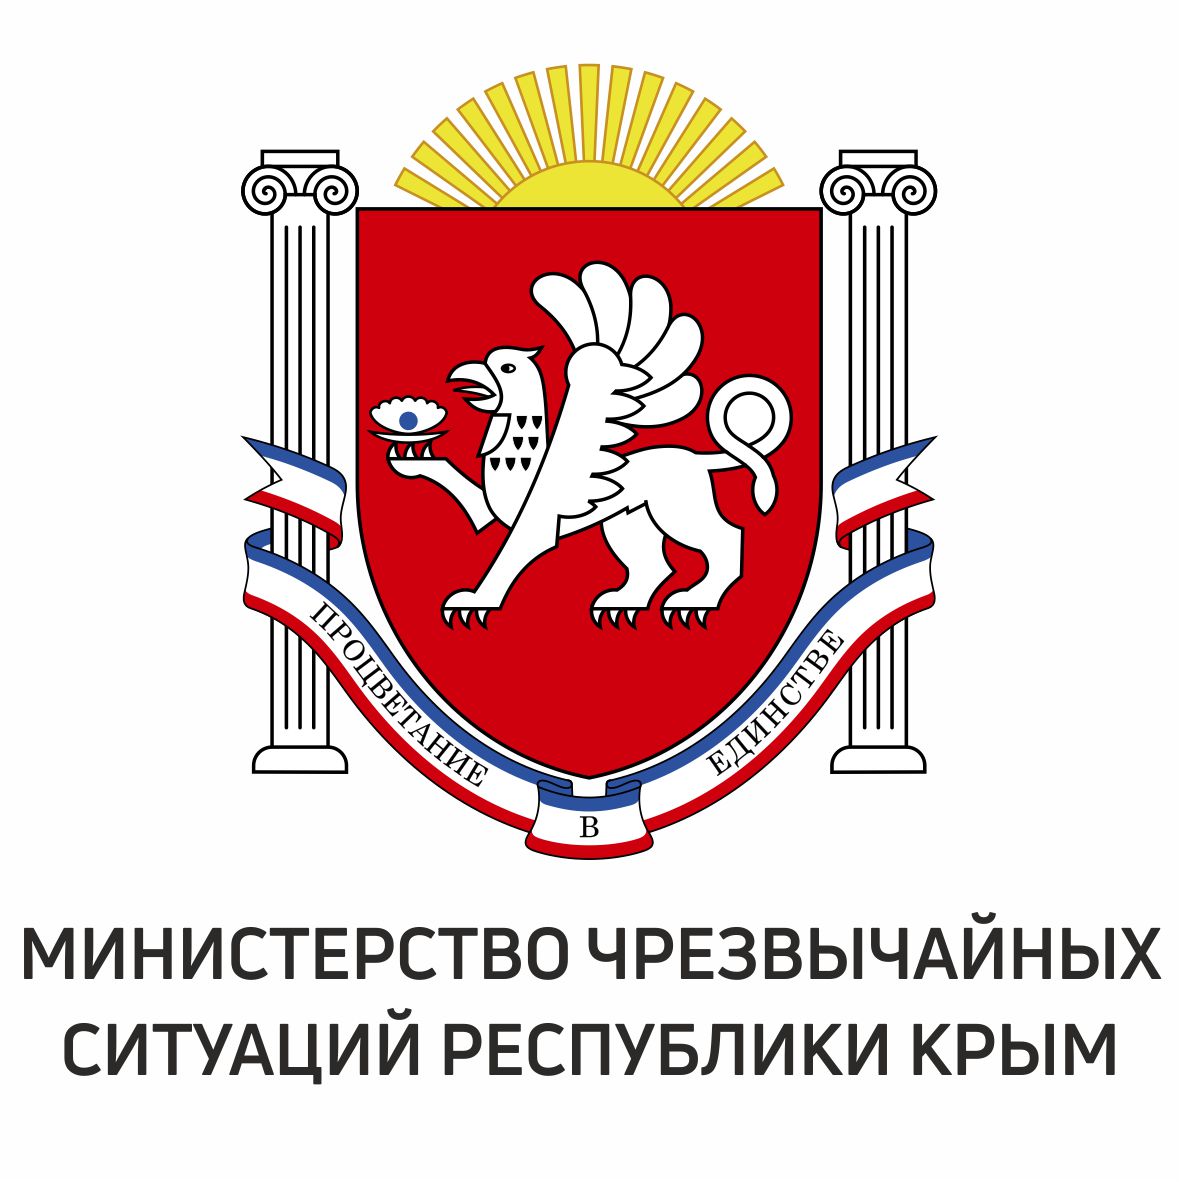 Министерство чрезвычайных ситуаций Республики Крым